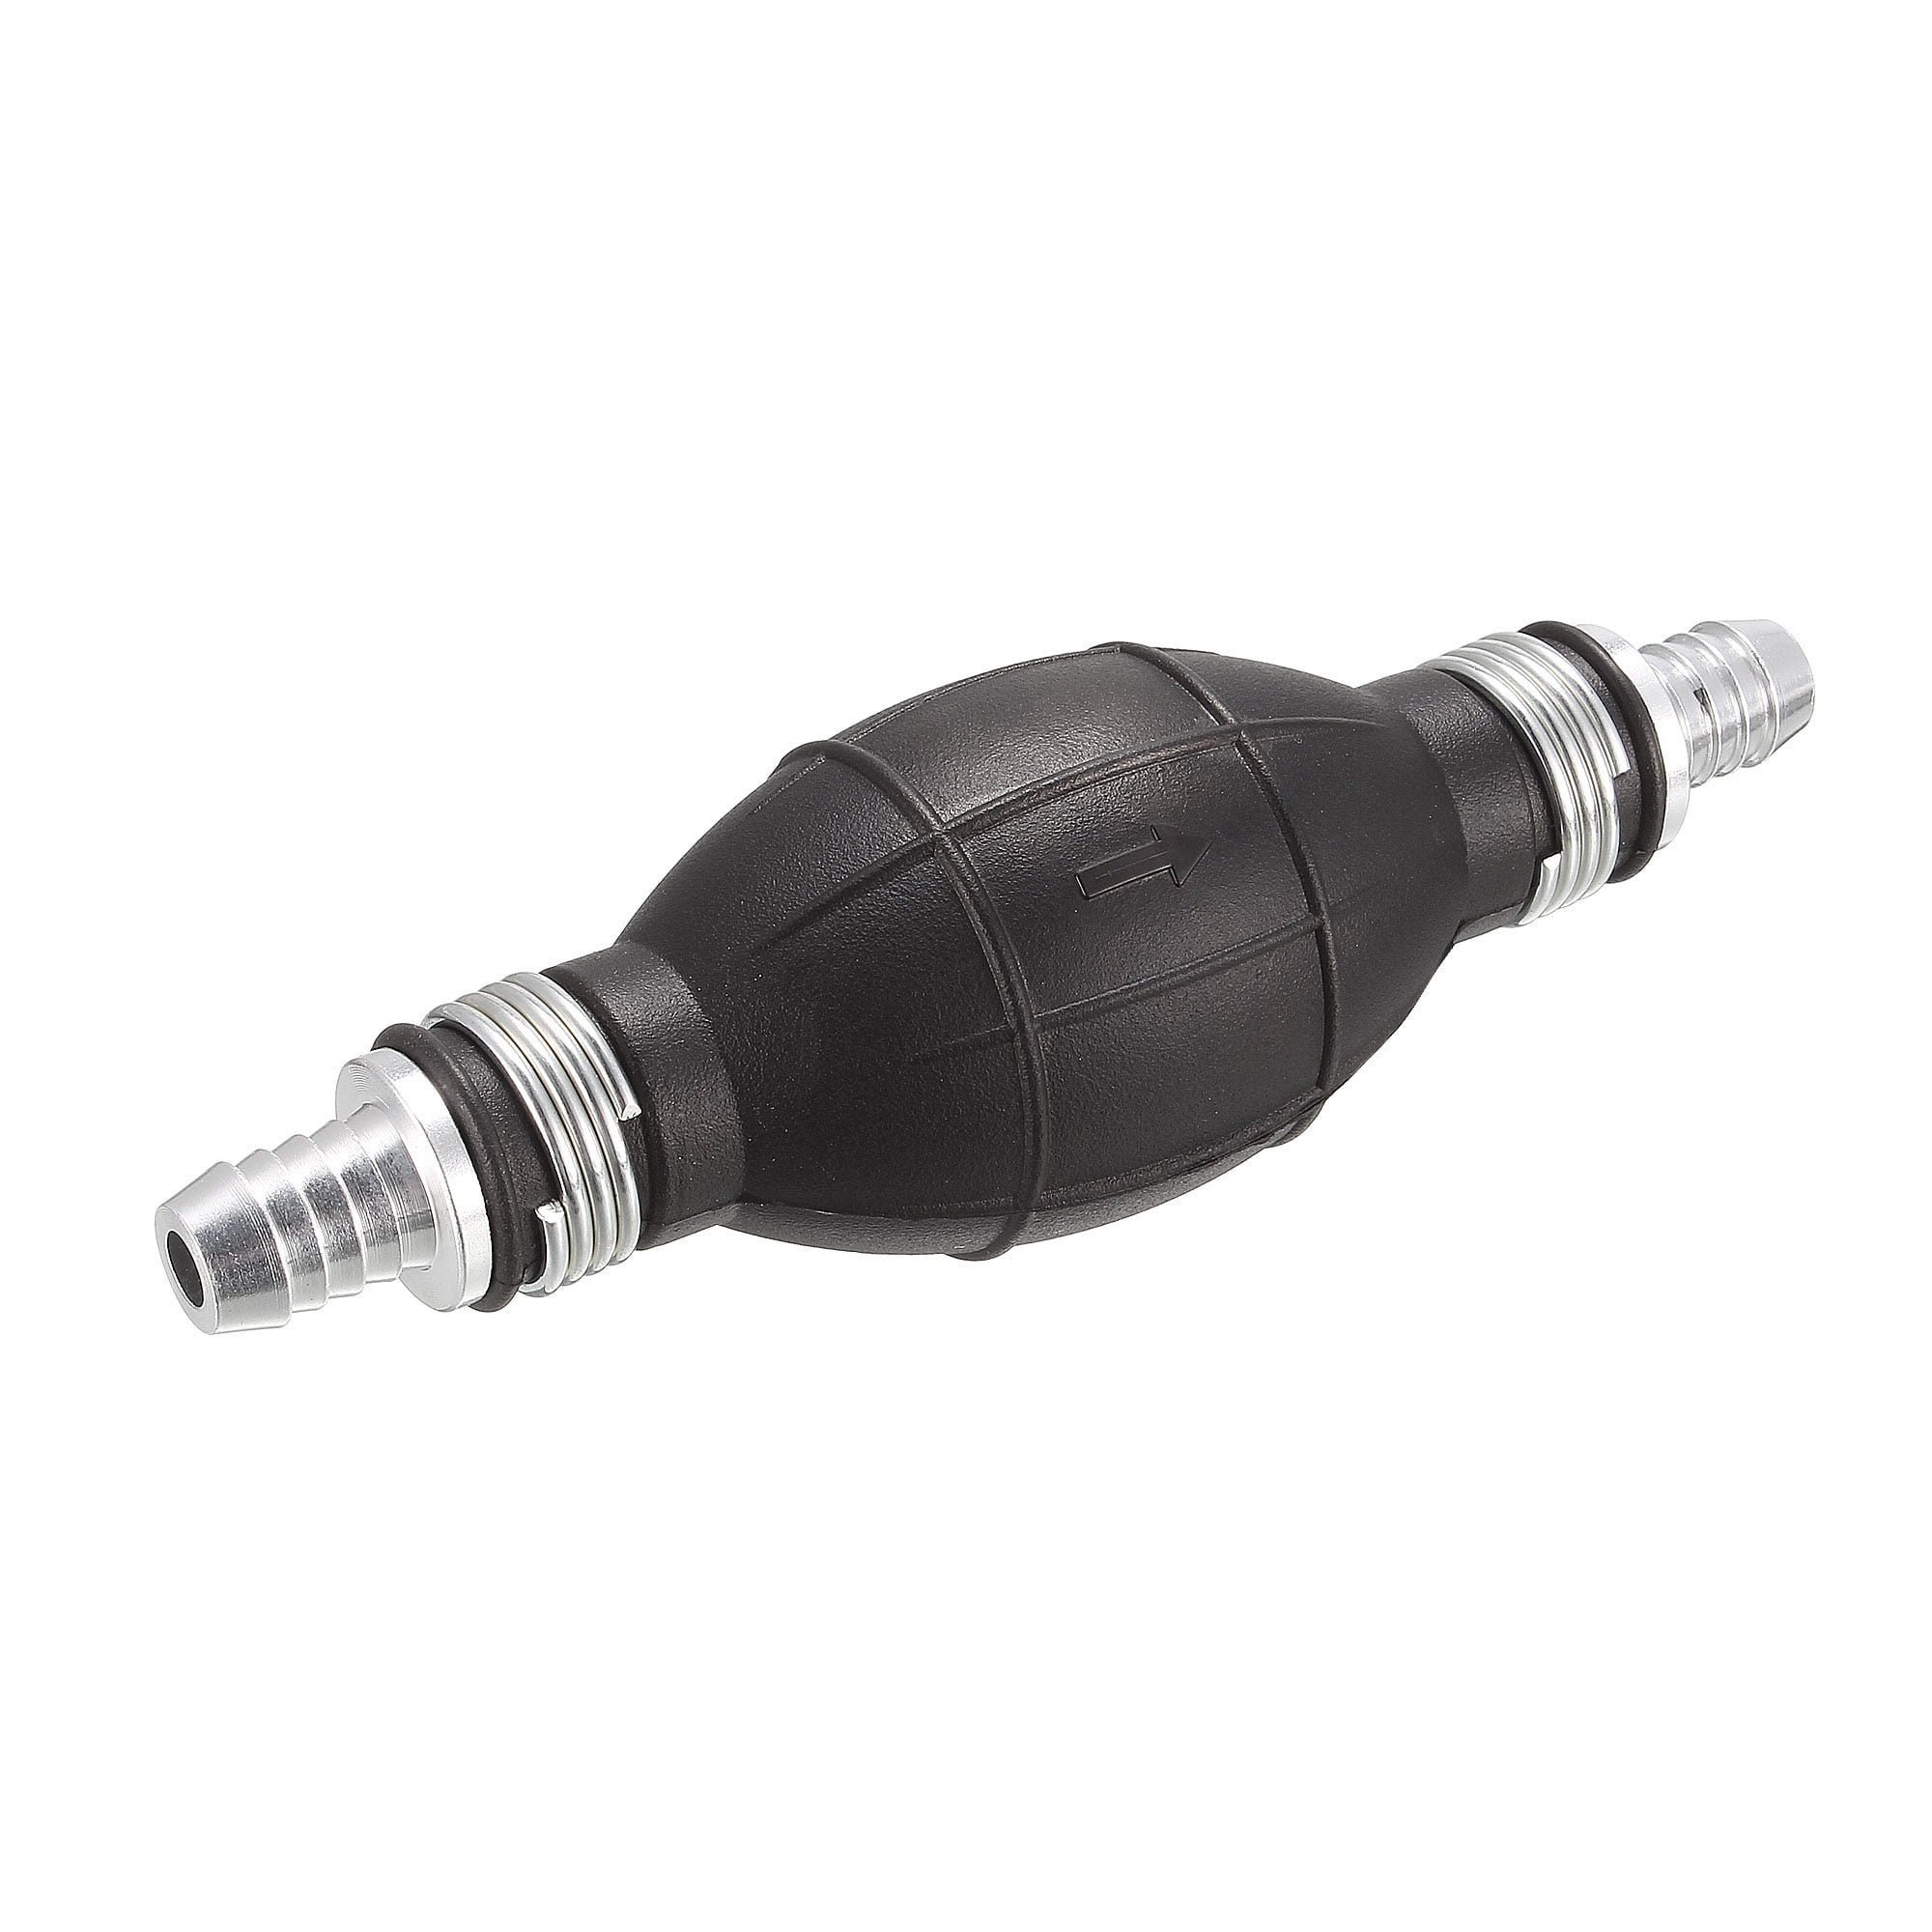 8mm Rubber Gasoline Pump Fuel with hose Pump Primer Bulb Hand Petrol Pumps Tools 